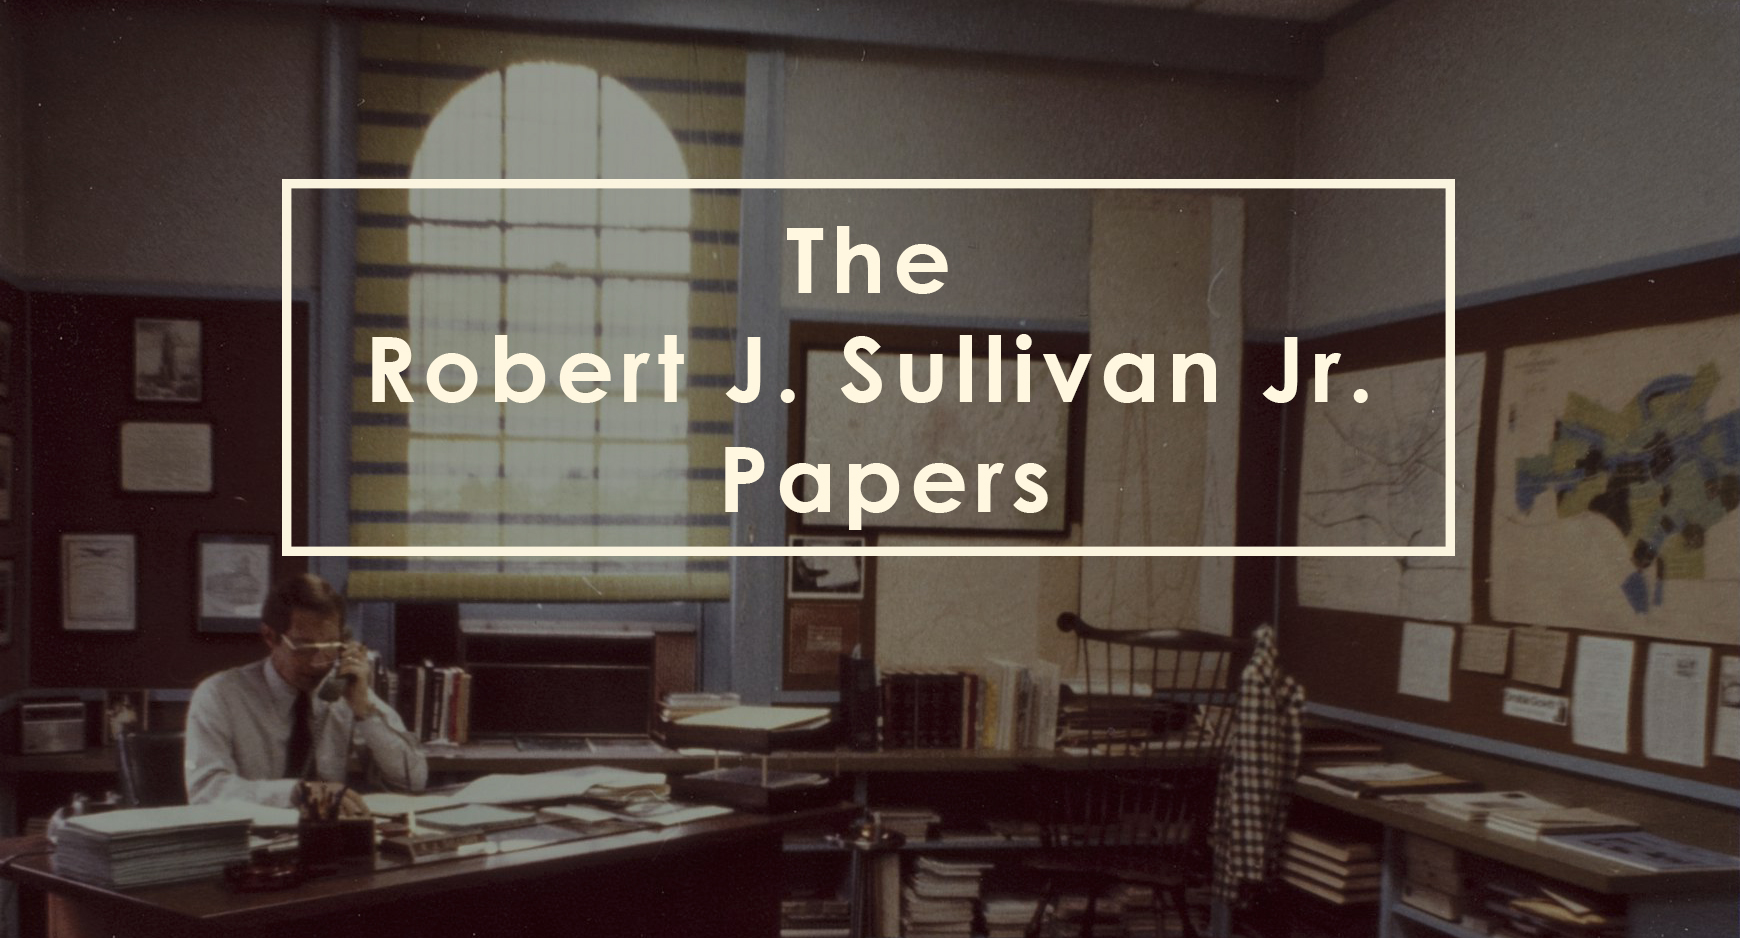 Robert James Sullivan Jr. Papers